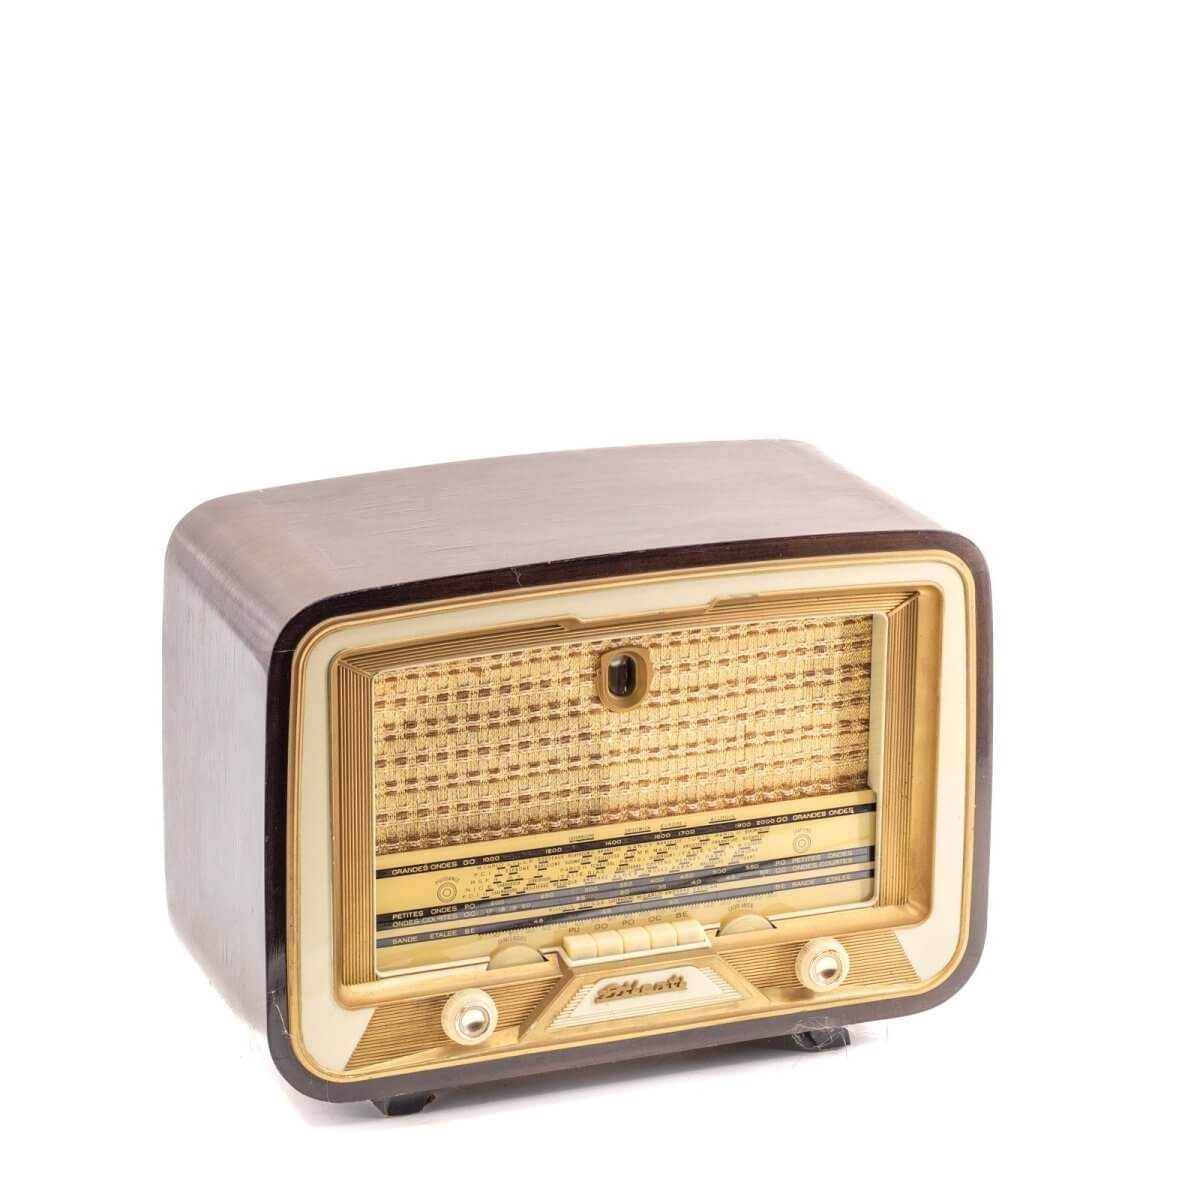 Radio Bluetooth Atlantic Vintage 50’S enceinte connectée française haut de gamme prodige radio vintage